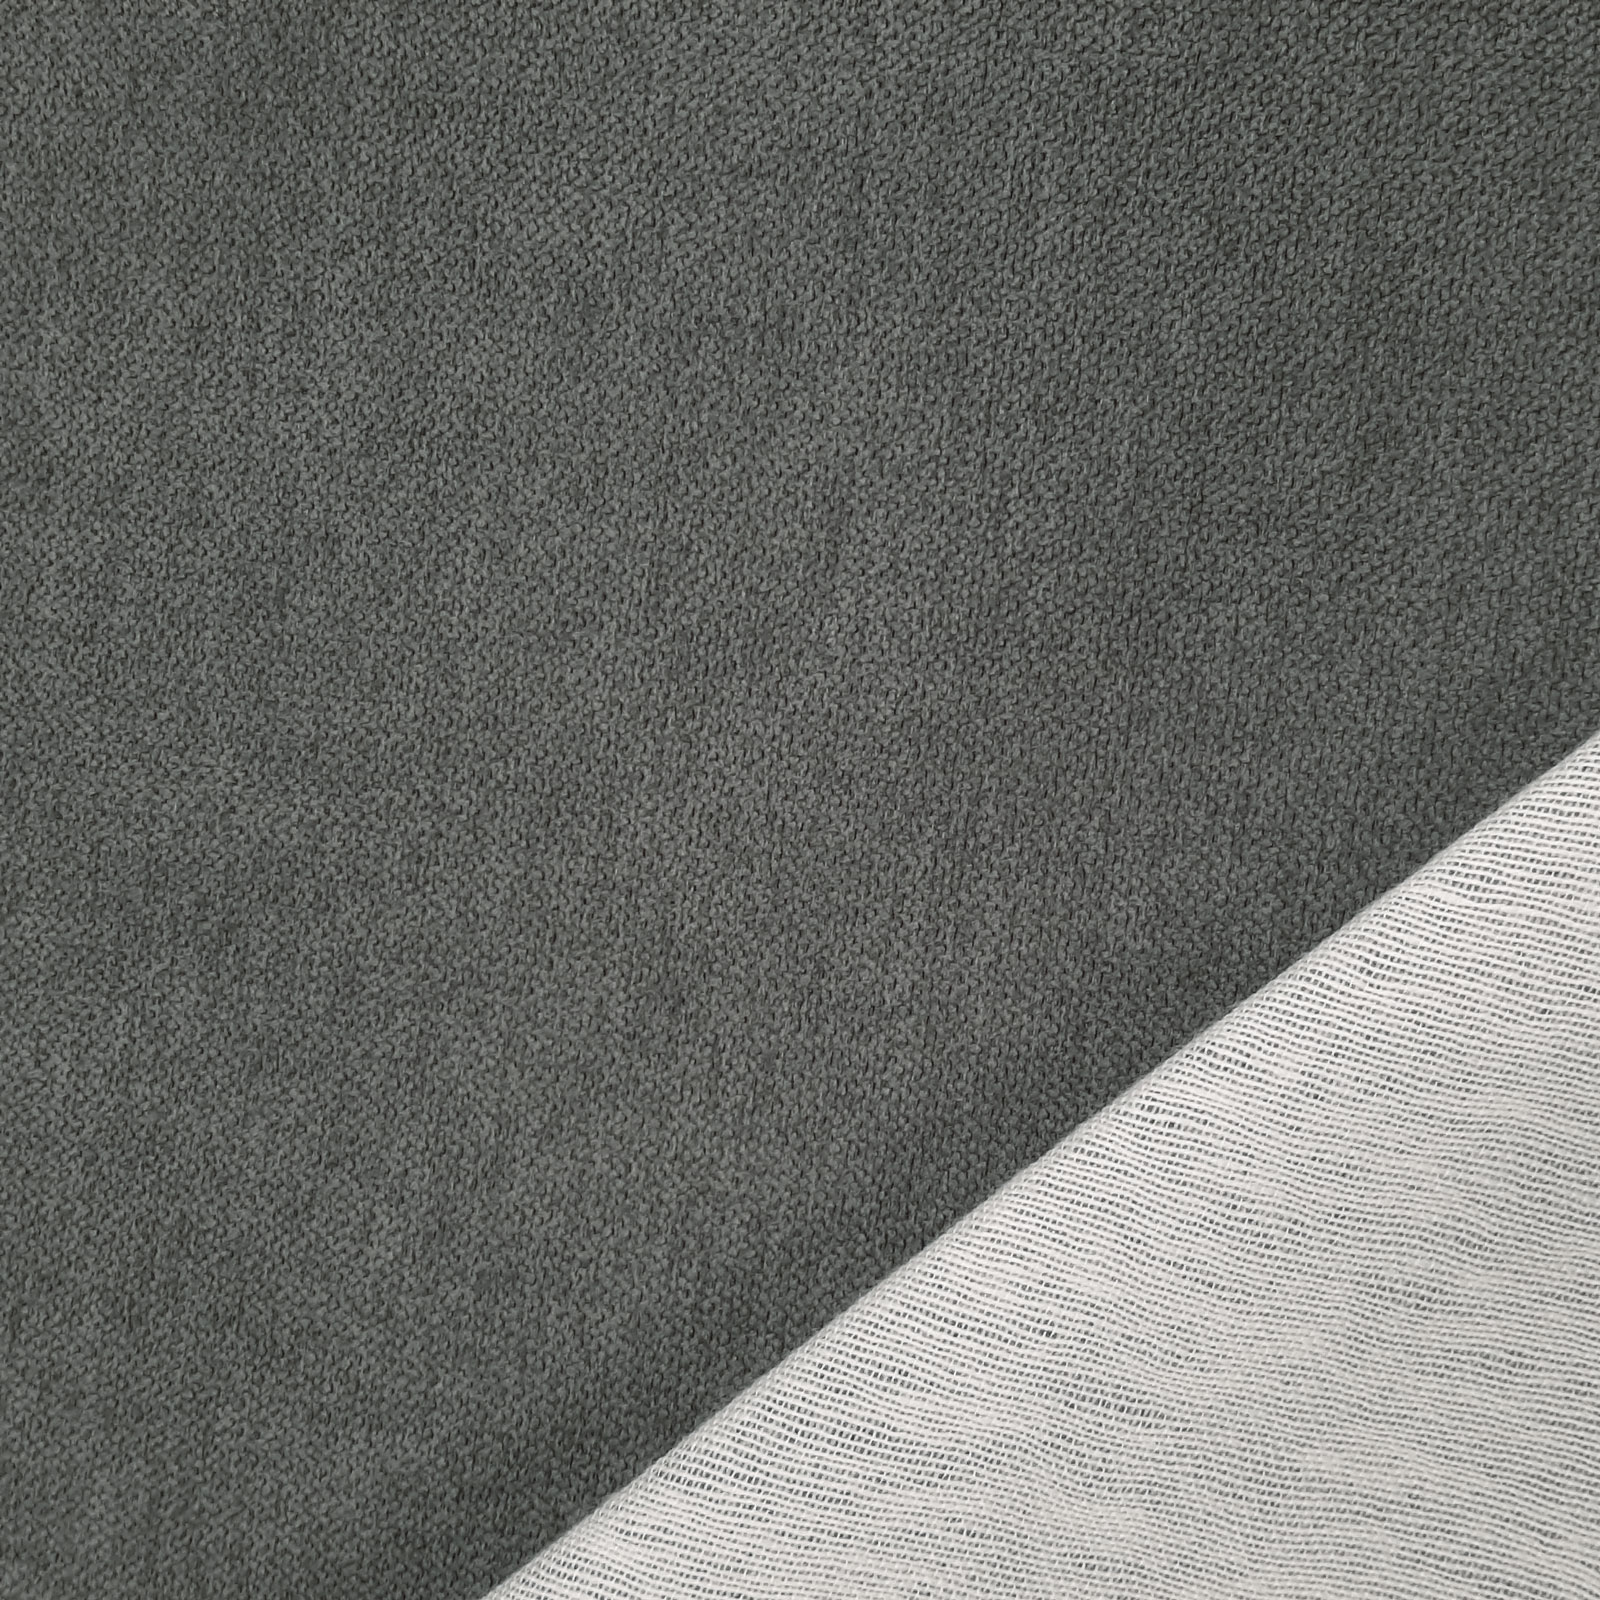 Deluxe - tejido de tapicería Öko-Tex® de alta calidad - Gris oscuro